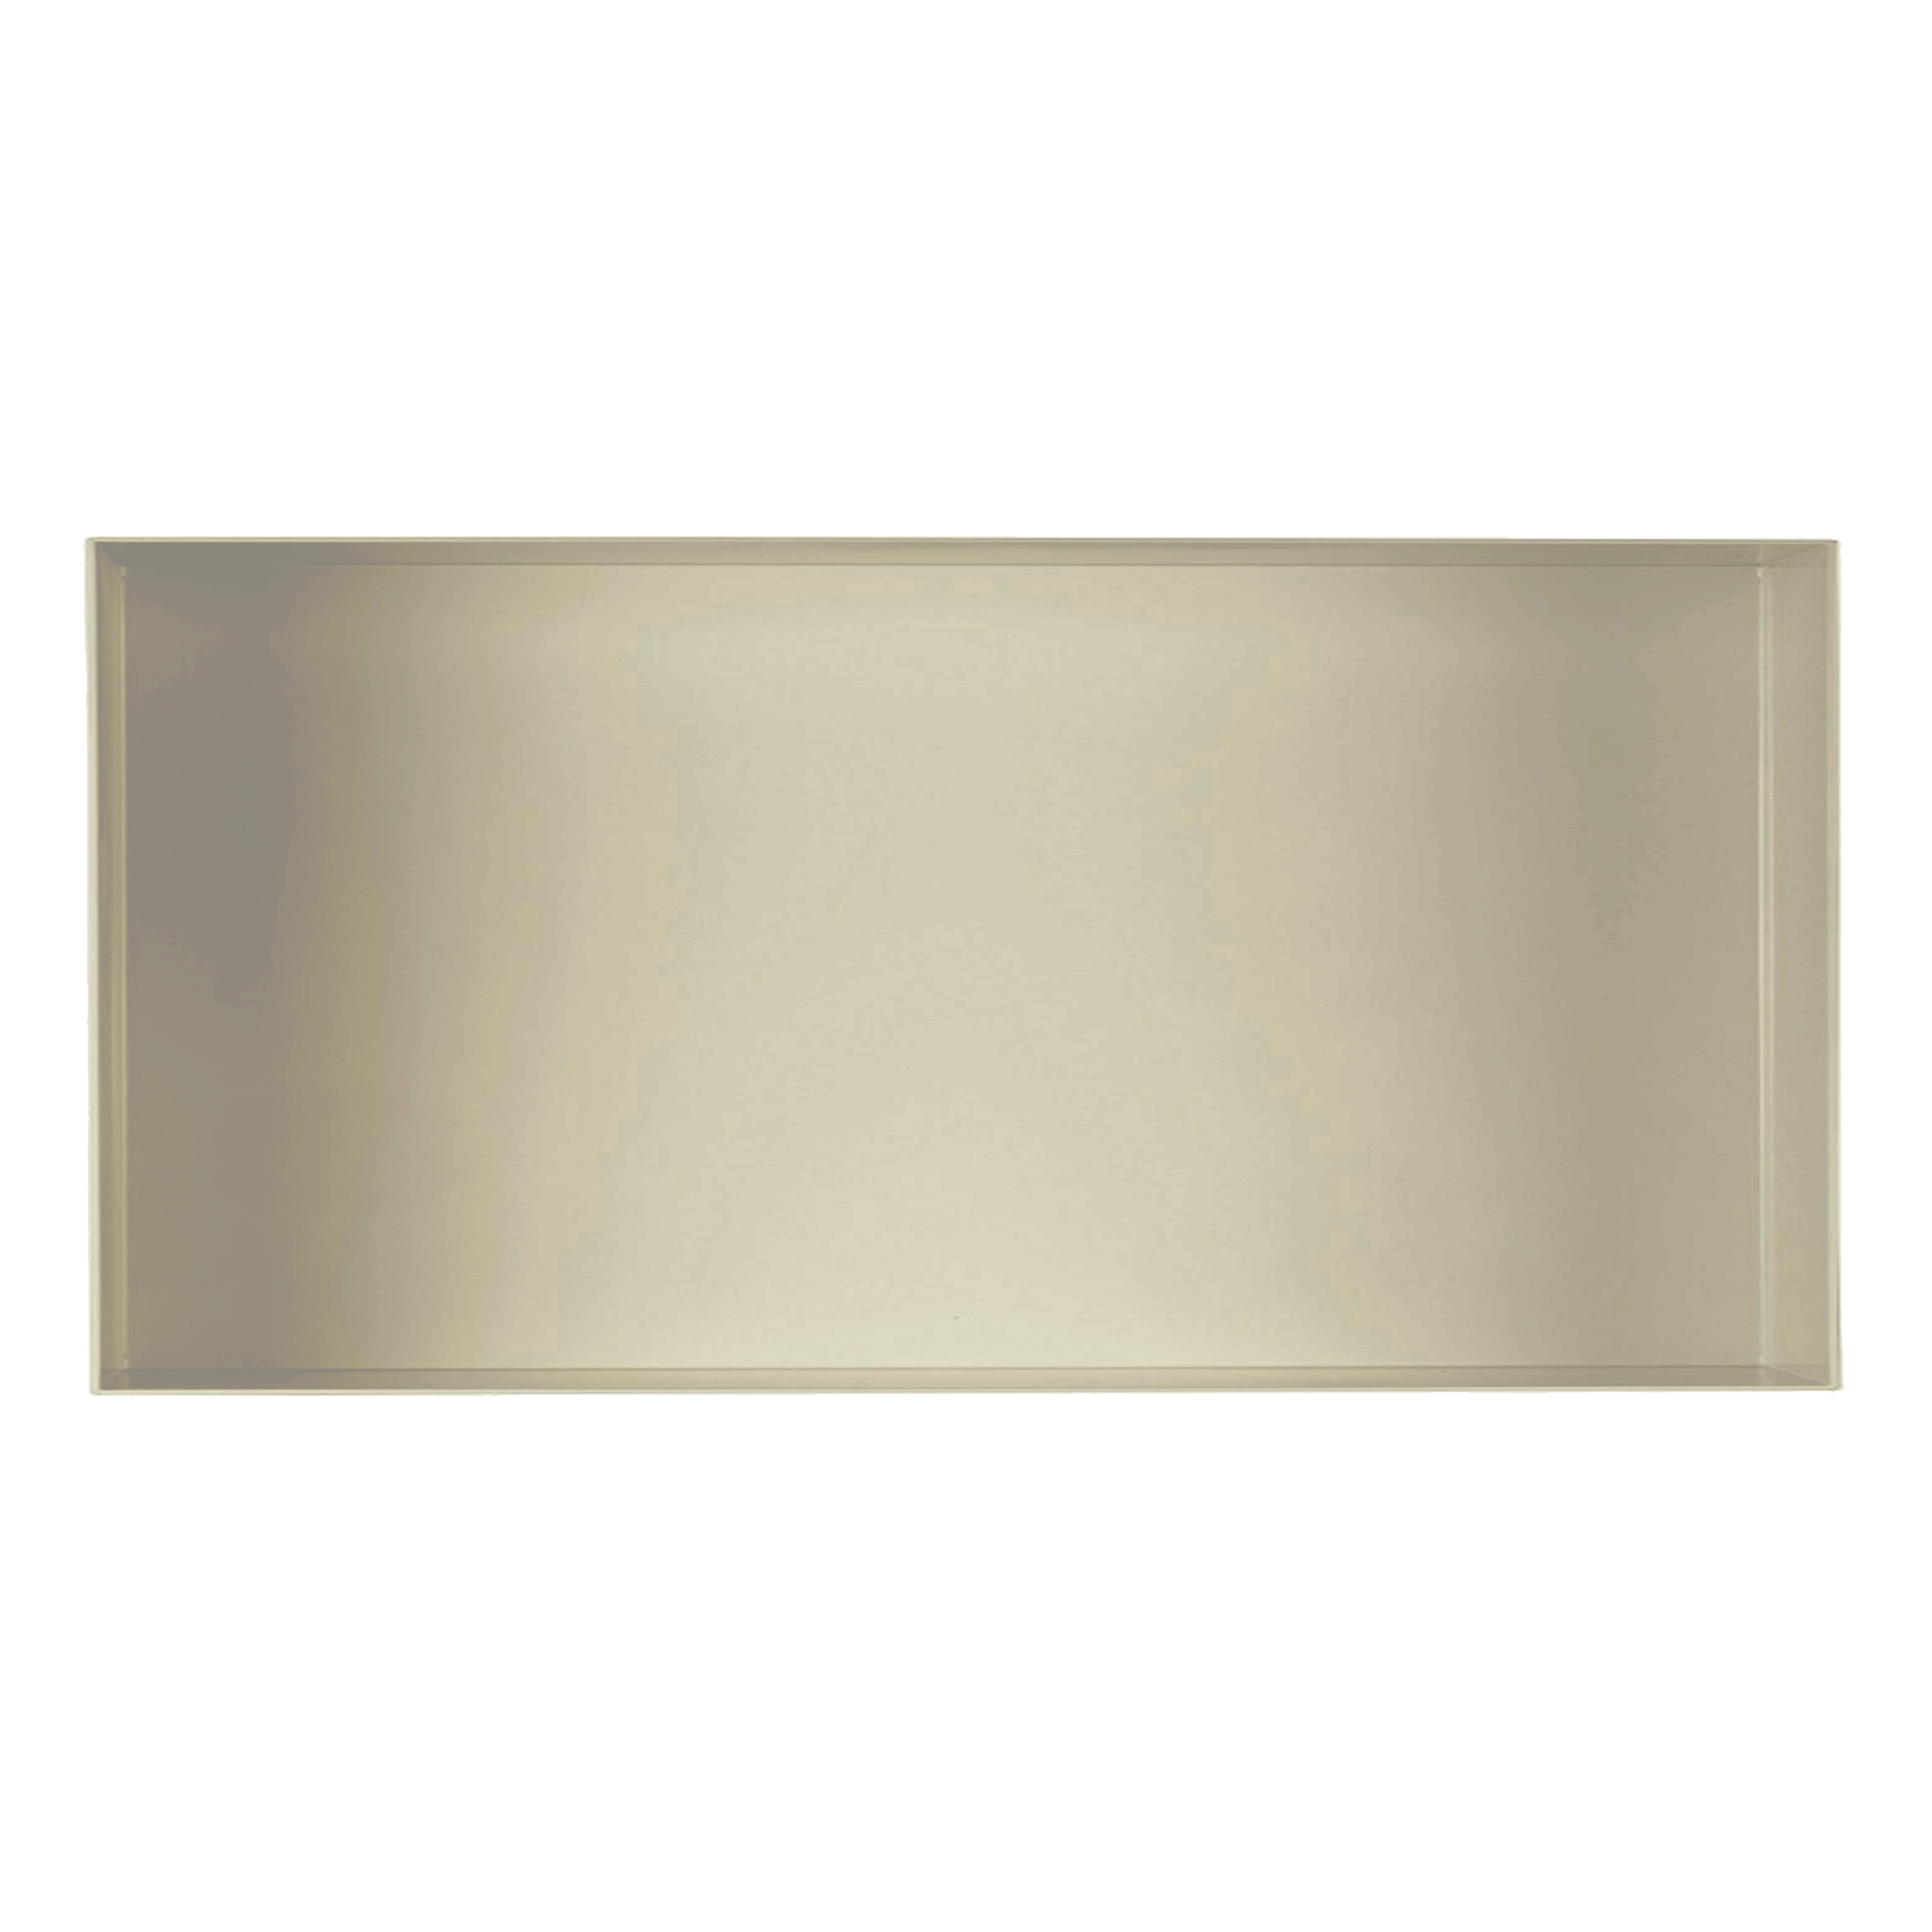 Valli Home – V-Box, Nicchia portaoggetti in Metallo smaltato color Grigio Chiarissimo KK62, Misura 30X60 P. 10 cm – V-BOX.MLLO.30X60.62